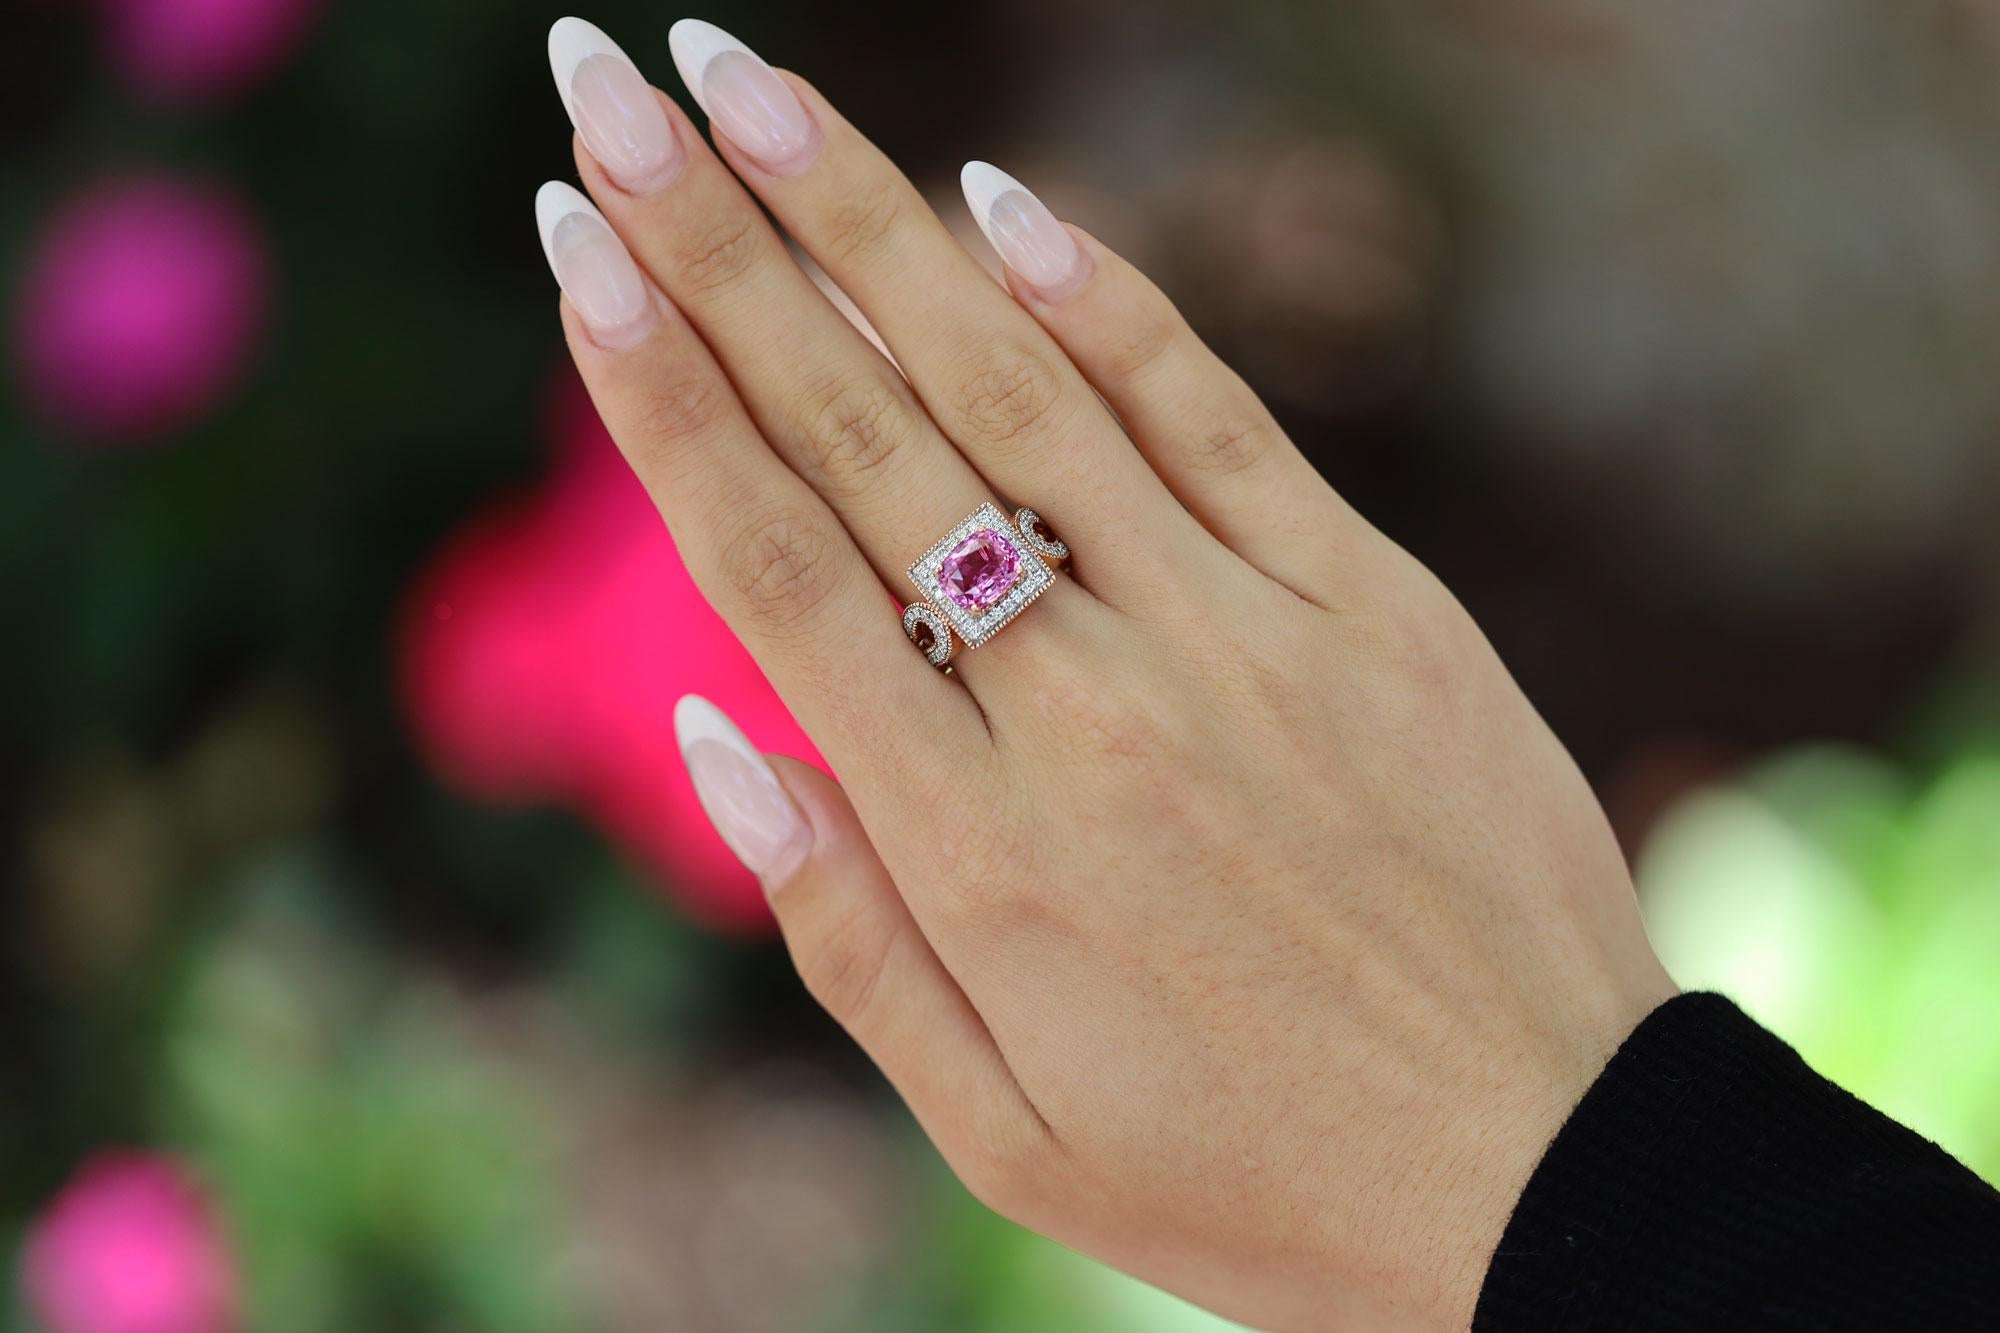 Cuando nuestro gemólogo seleccionó este zafiro rosa raro y profundamente saturado, no teníamos ni idea de cómo resultaría este anillo de compromiso/anillo de cóctel de gemas híbridas. Nuestro diseñador optó por una alianza no tradicional, engarzando